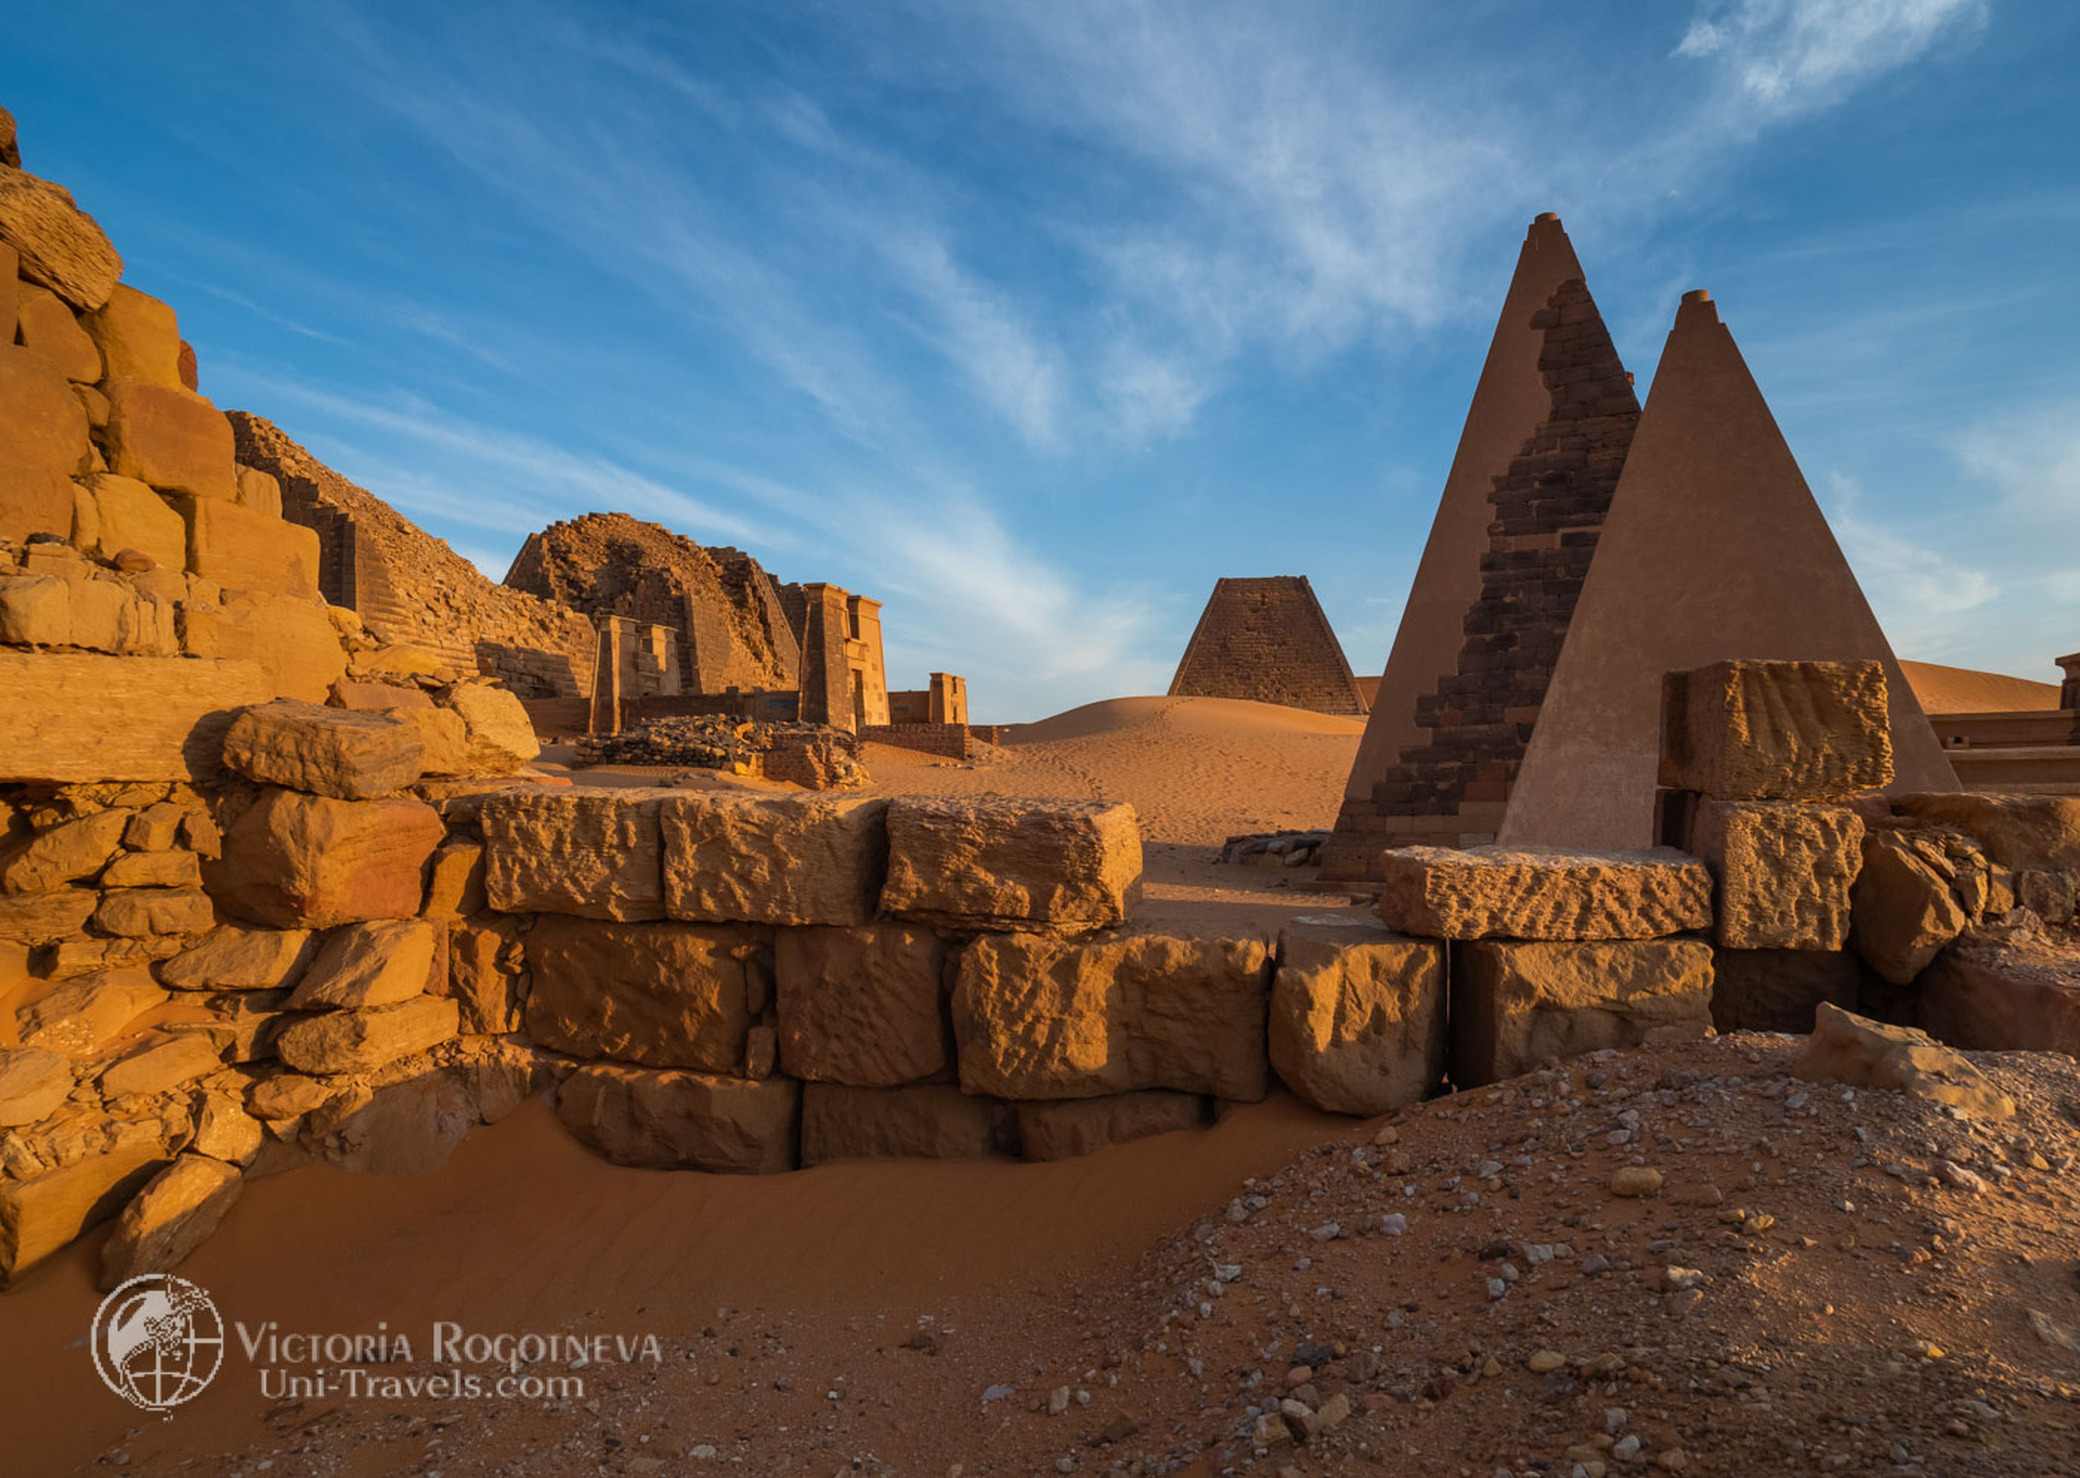 Характер взаимоотношений с природой цивилизации мероэ. Пирамиды Мероэ. Мероэ Судан. Нубийские пирамиды в Судане. Царство Мероэ.